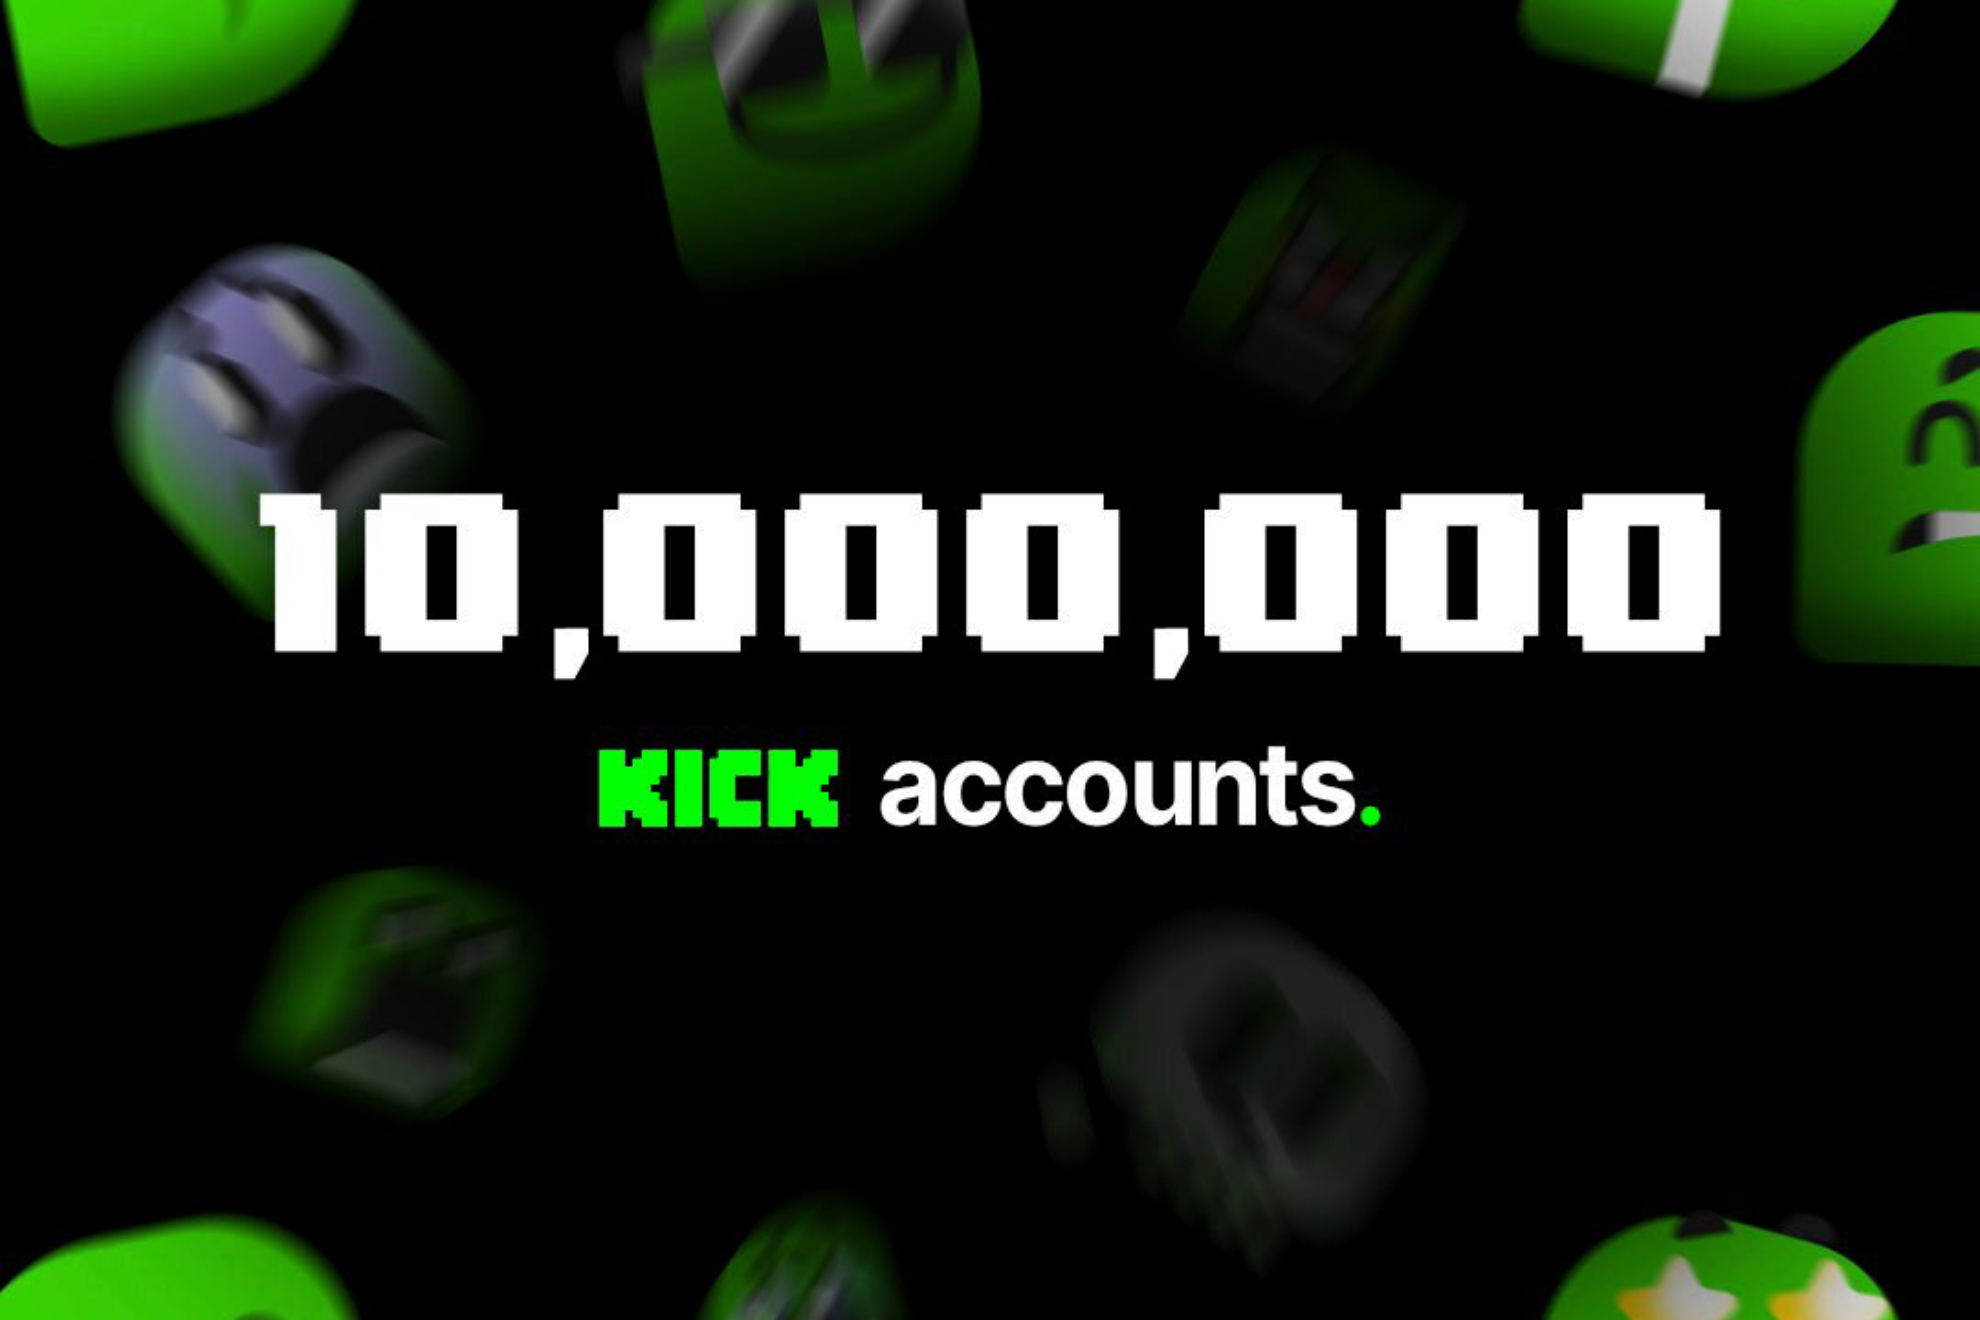 Las increíbles estadísticas de Kick en tan solo un mes: ¡Han conseguido 5 millones de dólares en suscripciones!